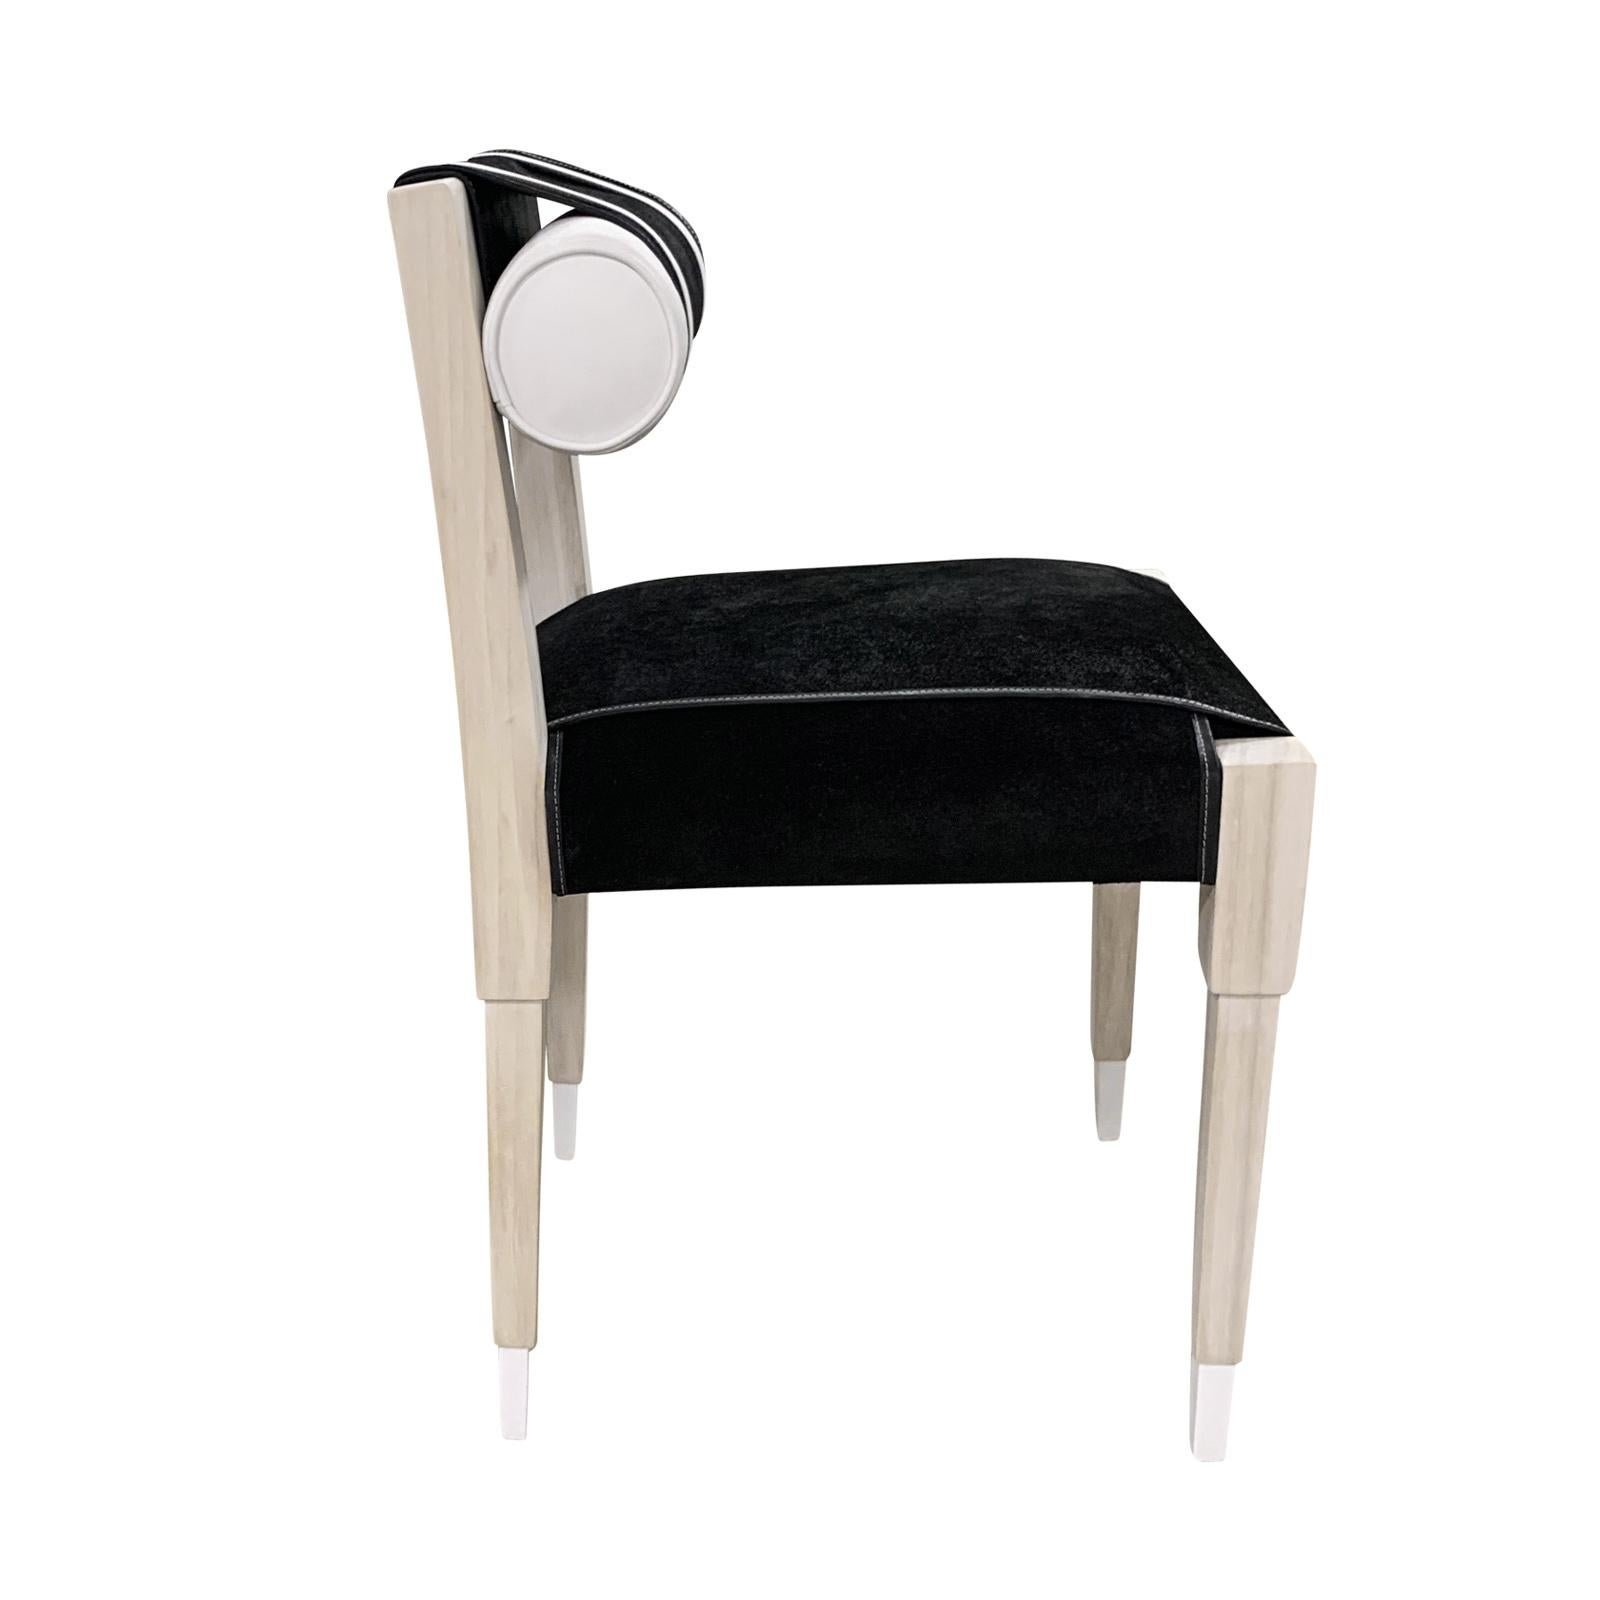 Schickes Profil und Stil definieren den Stuhl N°5. Dieser schöne Stuhl kombiniert ein Gestell aus gebleichter Eiche mit dem schönsten schwarzen Wildleder und weißen Vinylriemen (auch in echtem Leder erhältlich). Kundenspezifische Größen verfügbar!